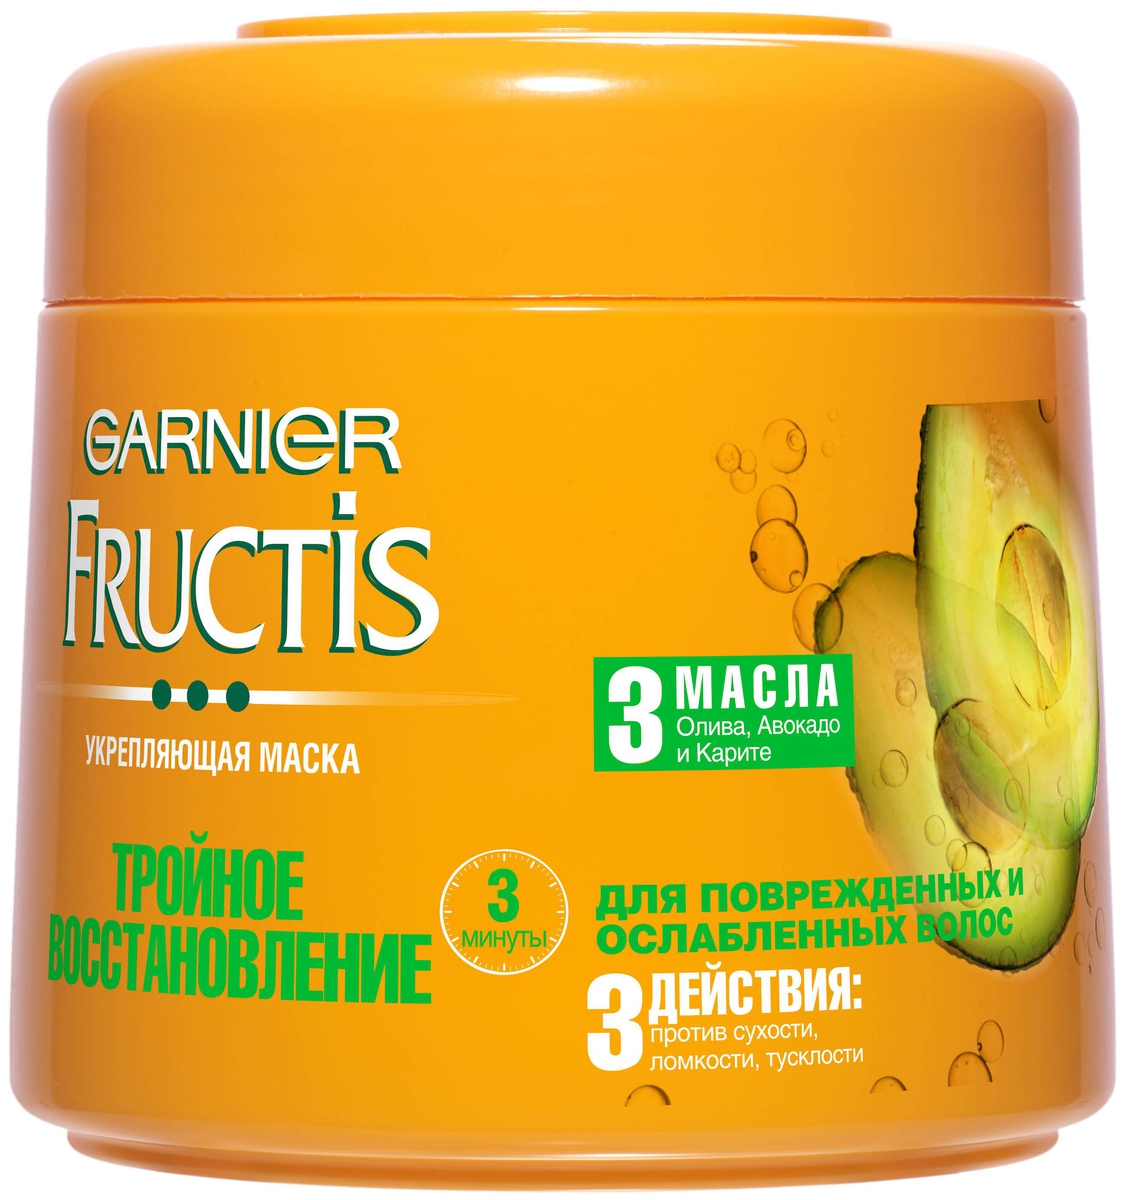 Garnier Fructis Маска для волос 